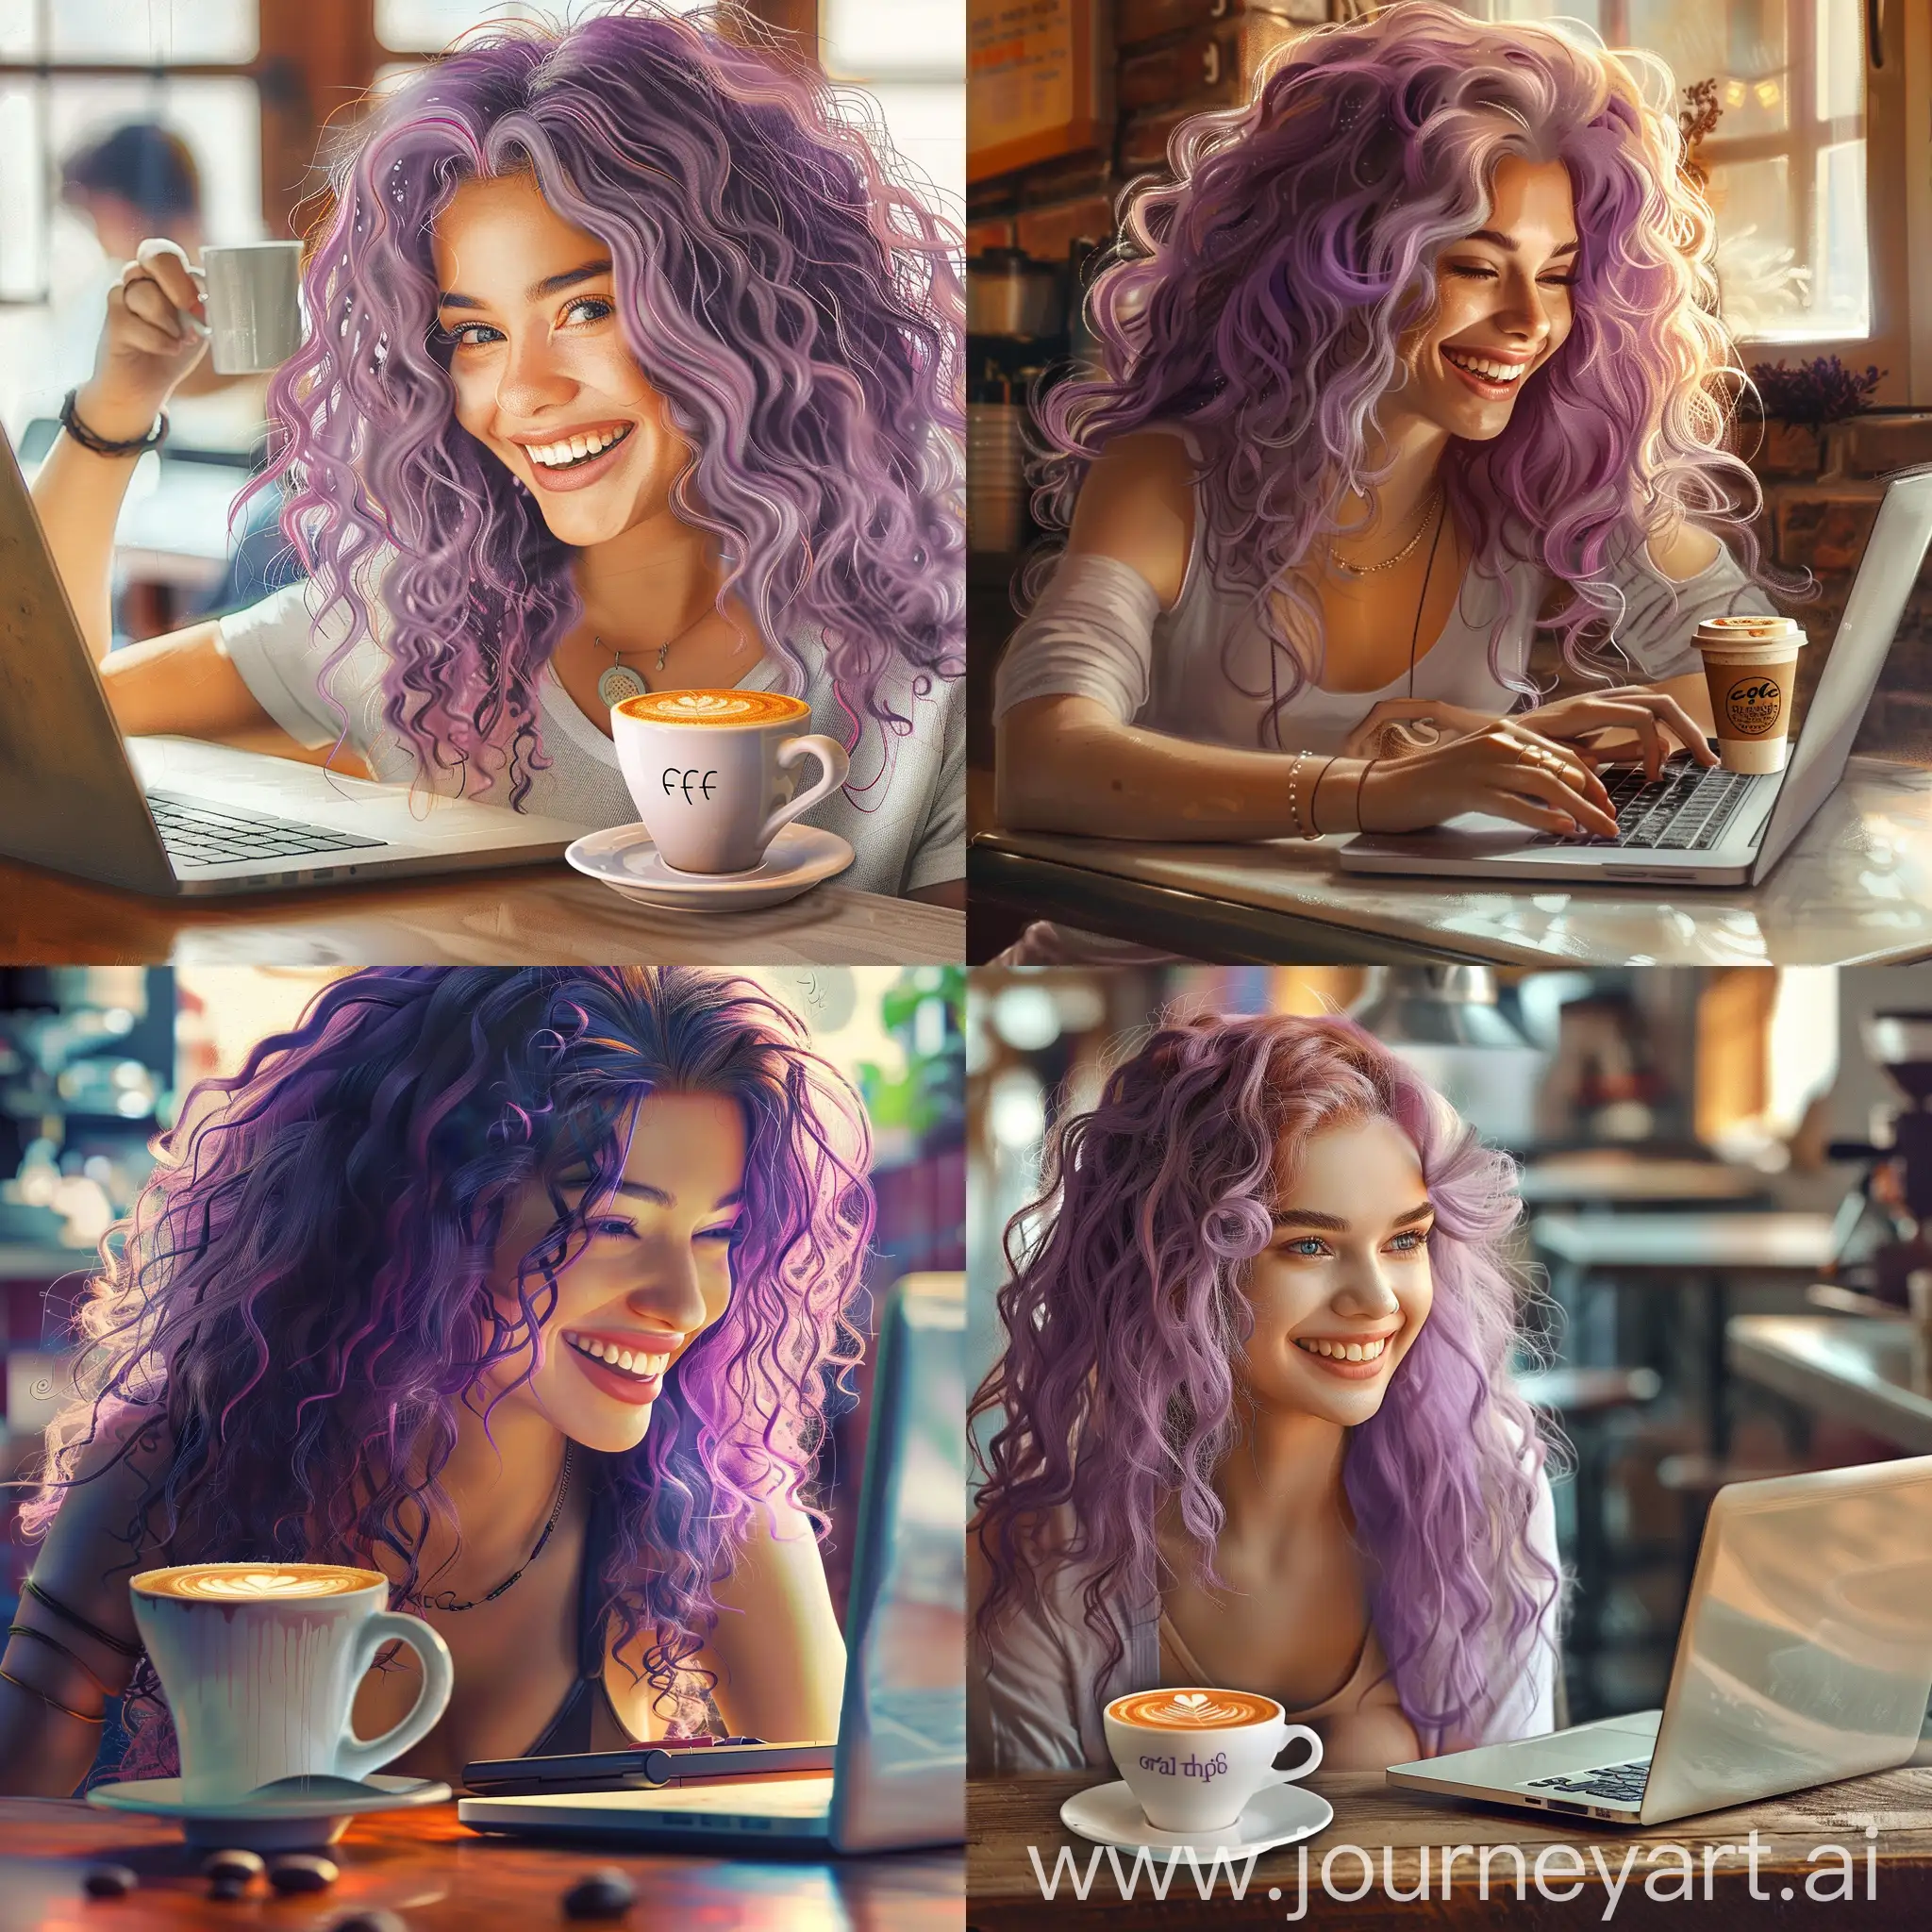 Красивая девушка с фиолетовыми кудрявыми волосами улыбается в кафе и работает за ноутбуком. Рядом стоит стаканчик кофе фотореализм